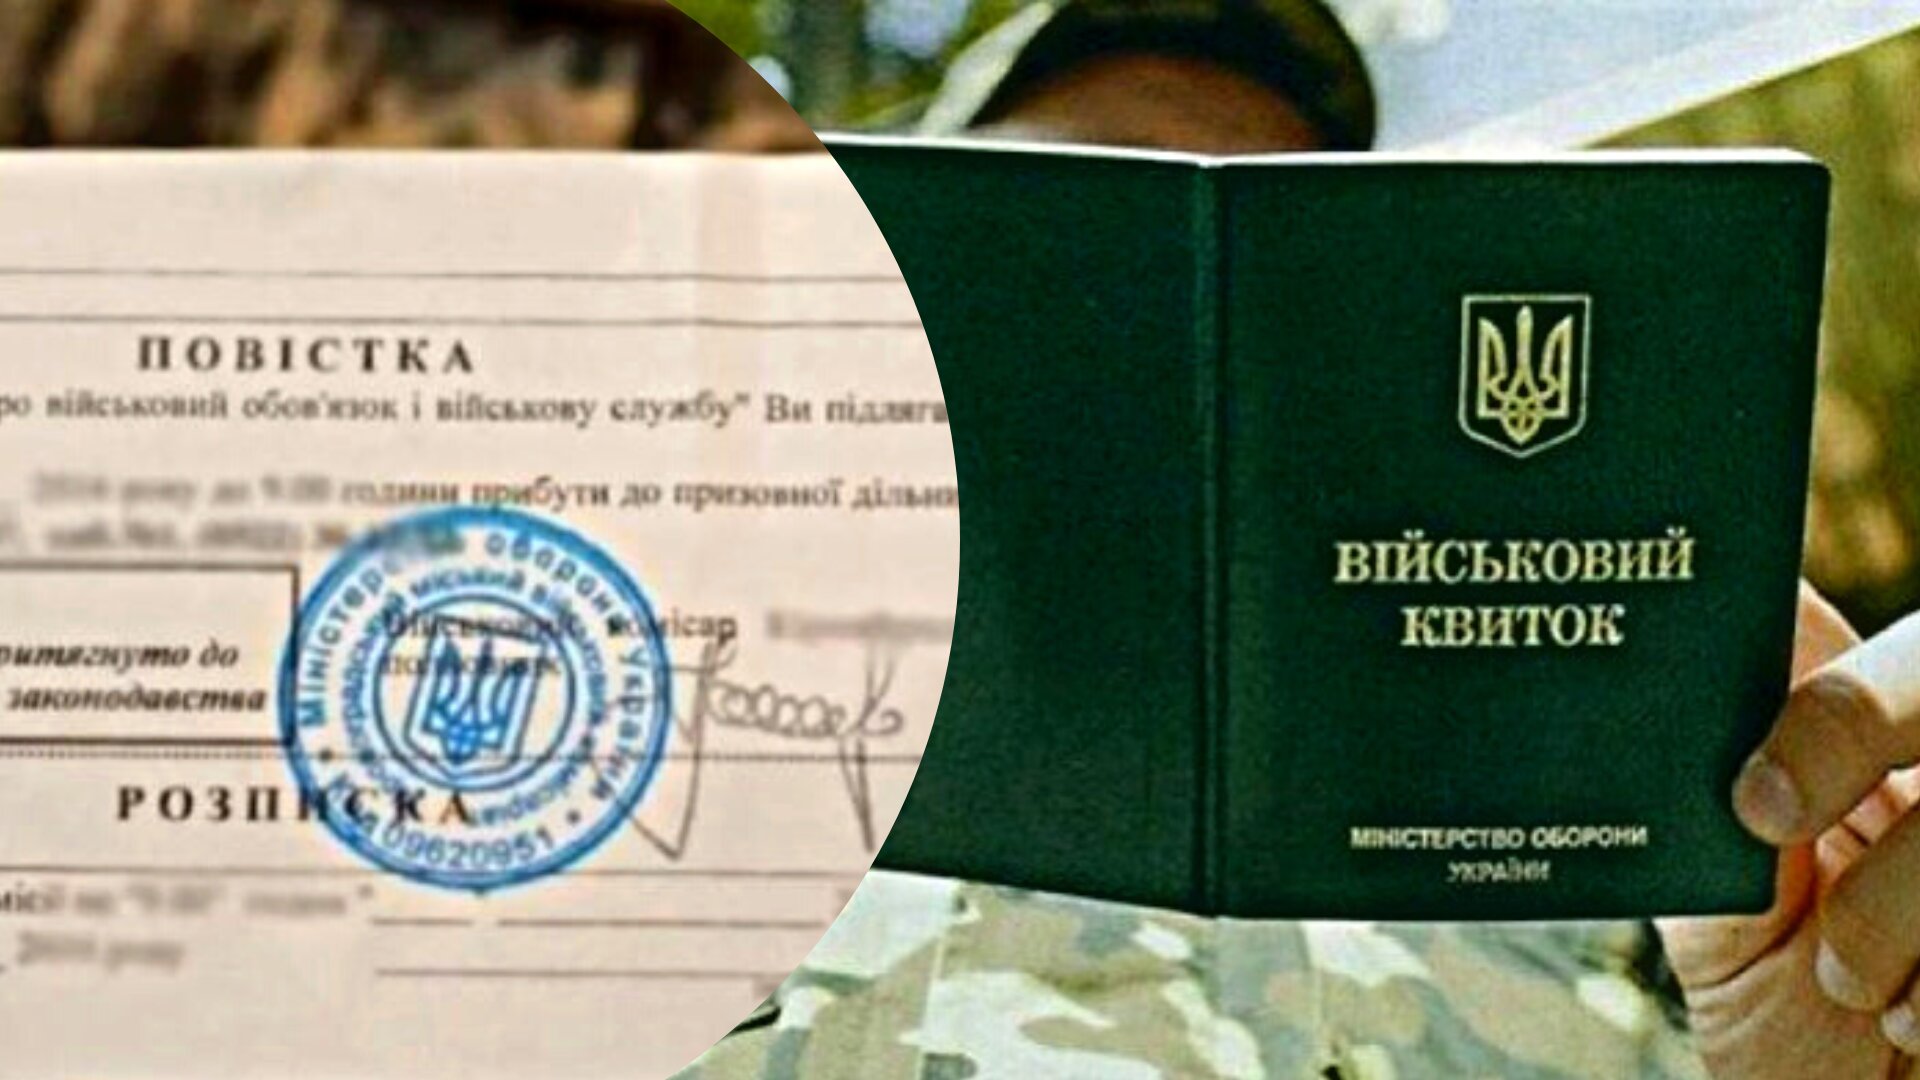 У Черкаській області судитимуть офіцера запасу, який категорично відмовився від мобілізації в умовах воєнного стану. Йому загрожує від 3 до 5 років позбавлення волі. 